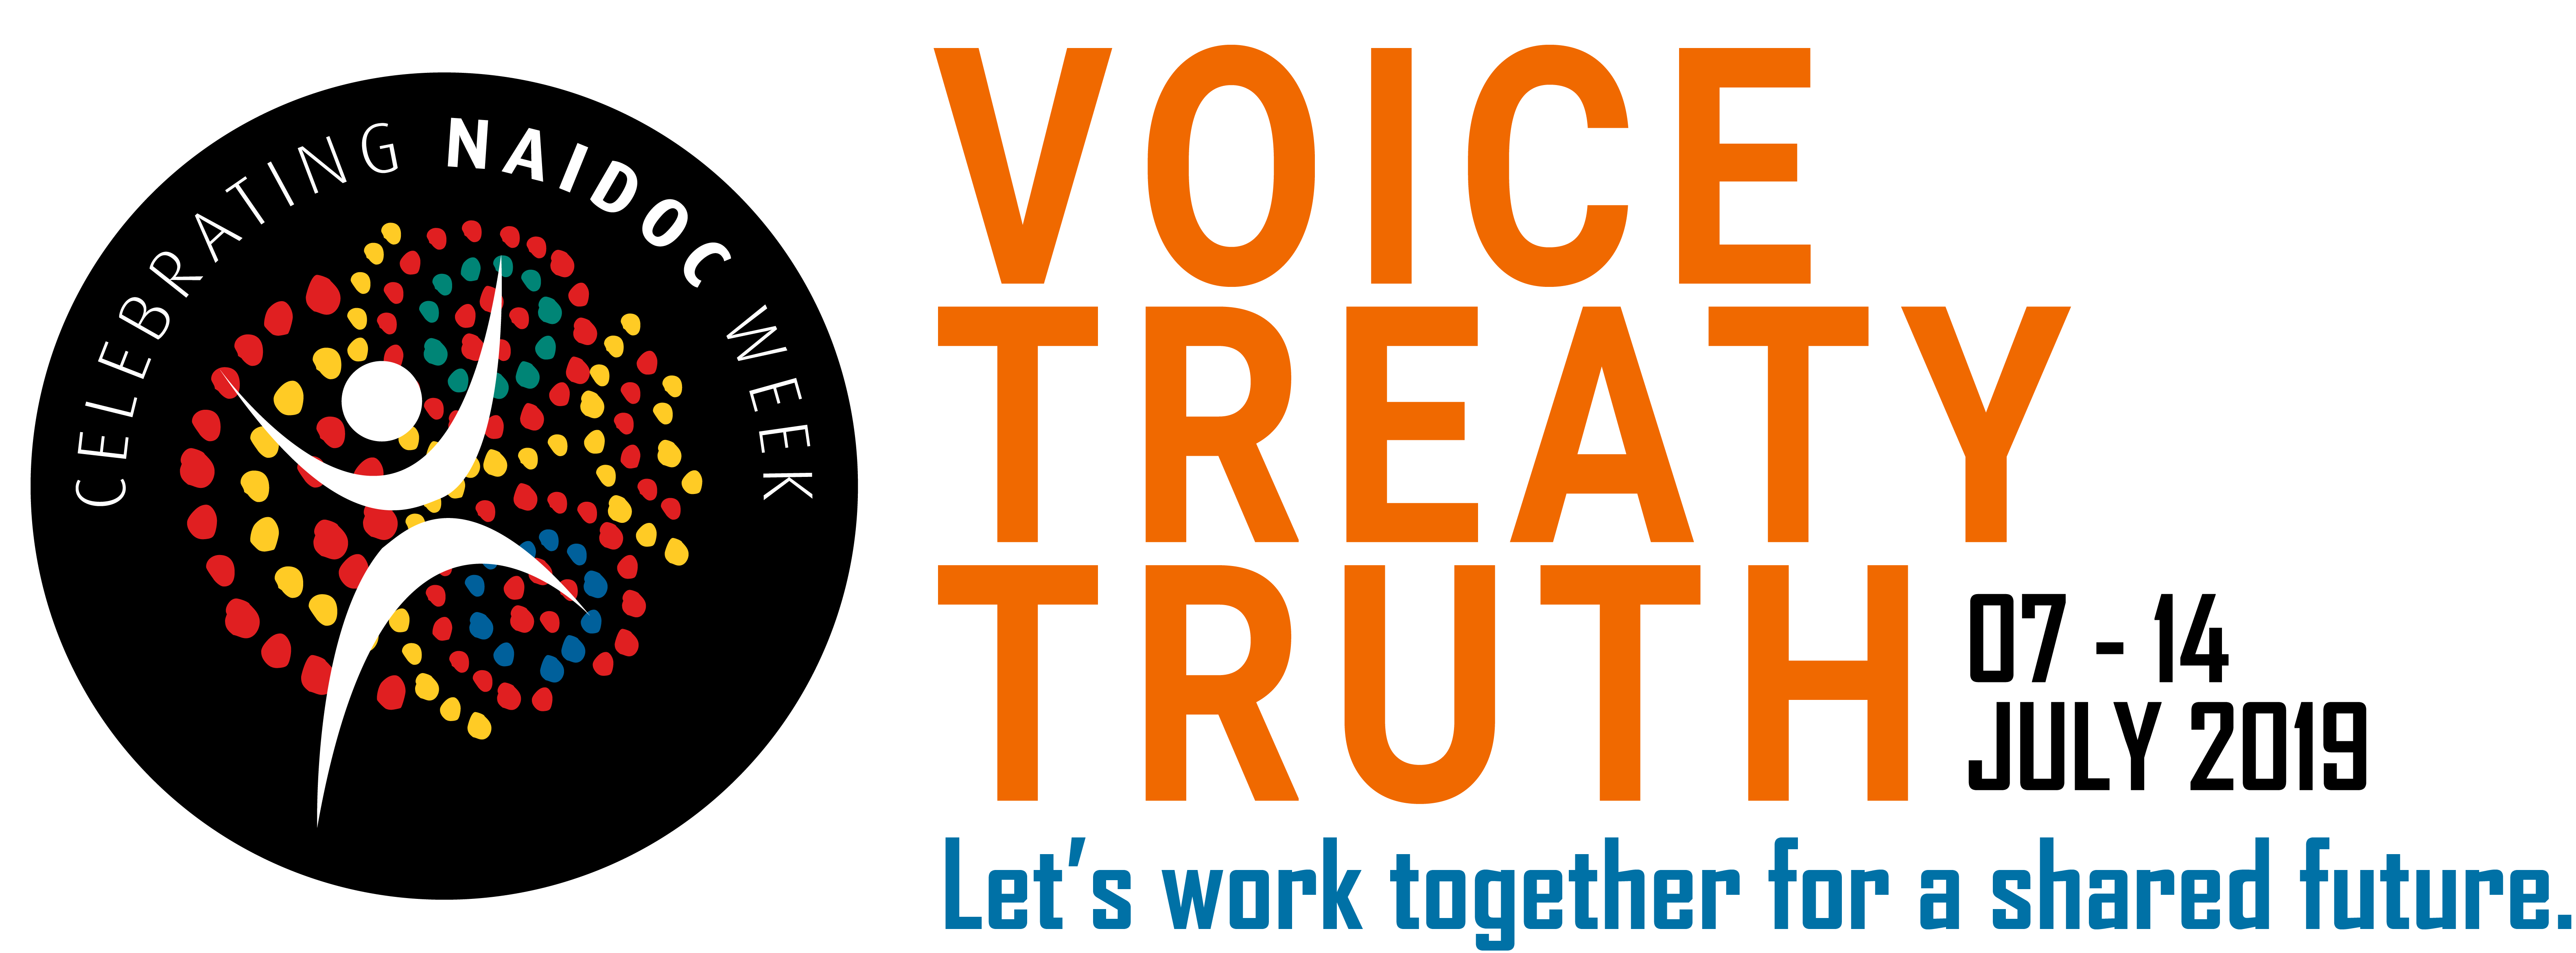 Voice Treaty Truth